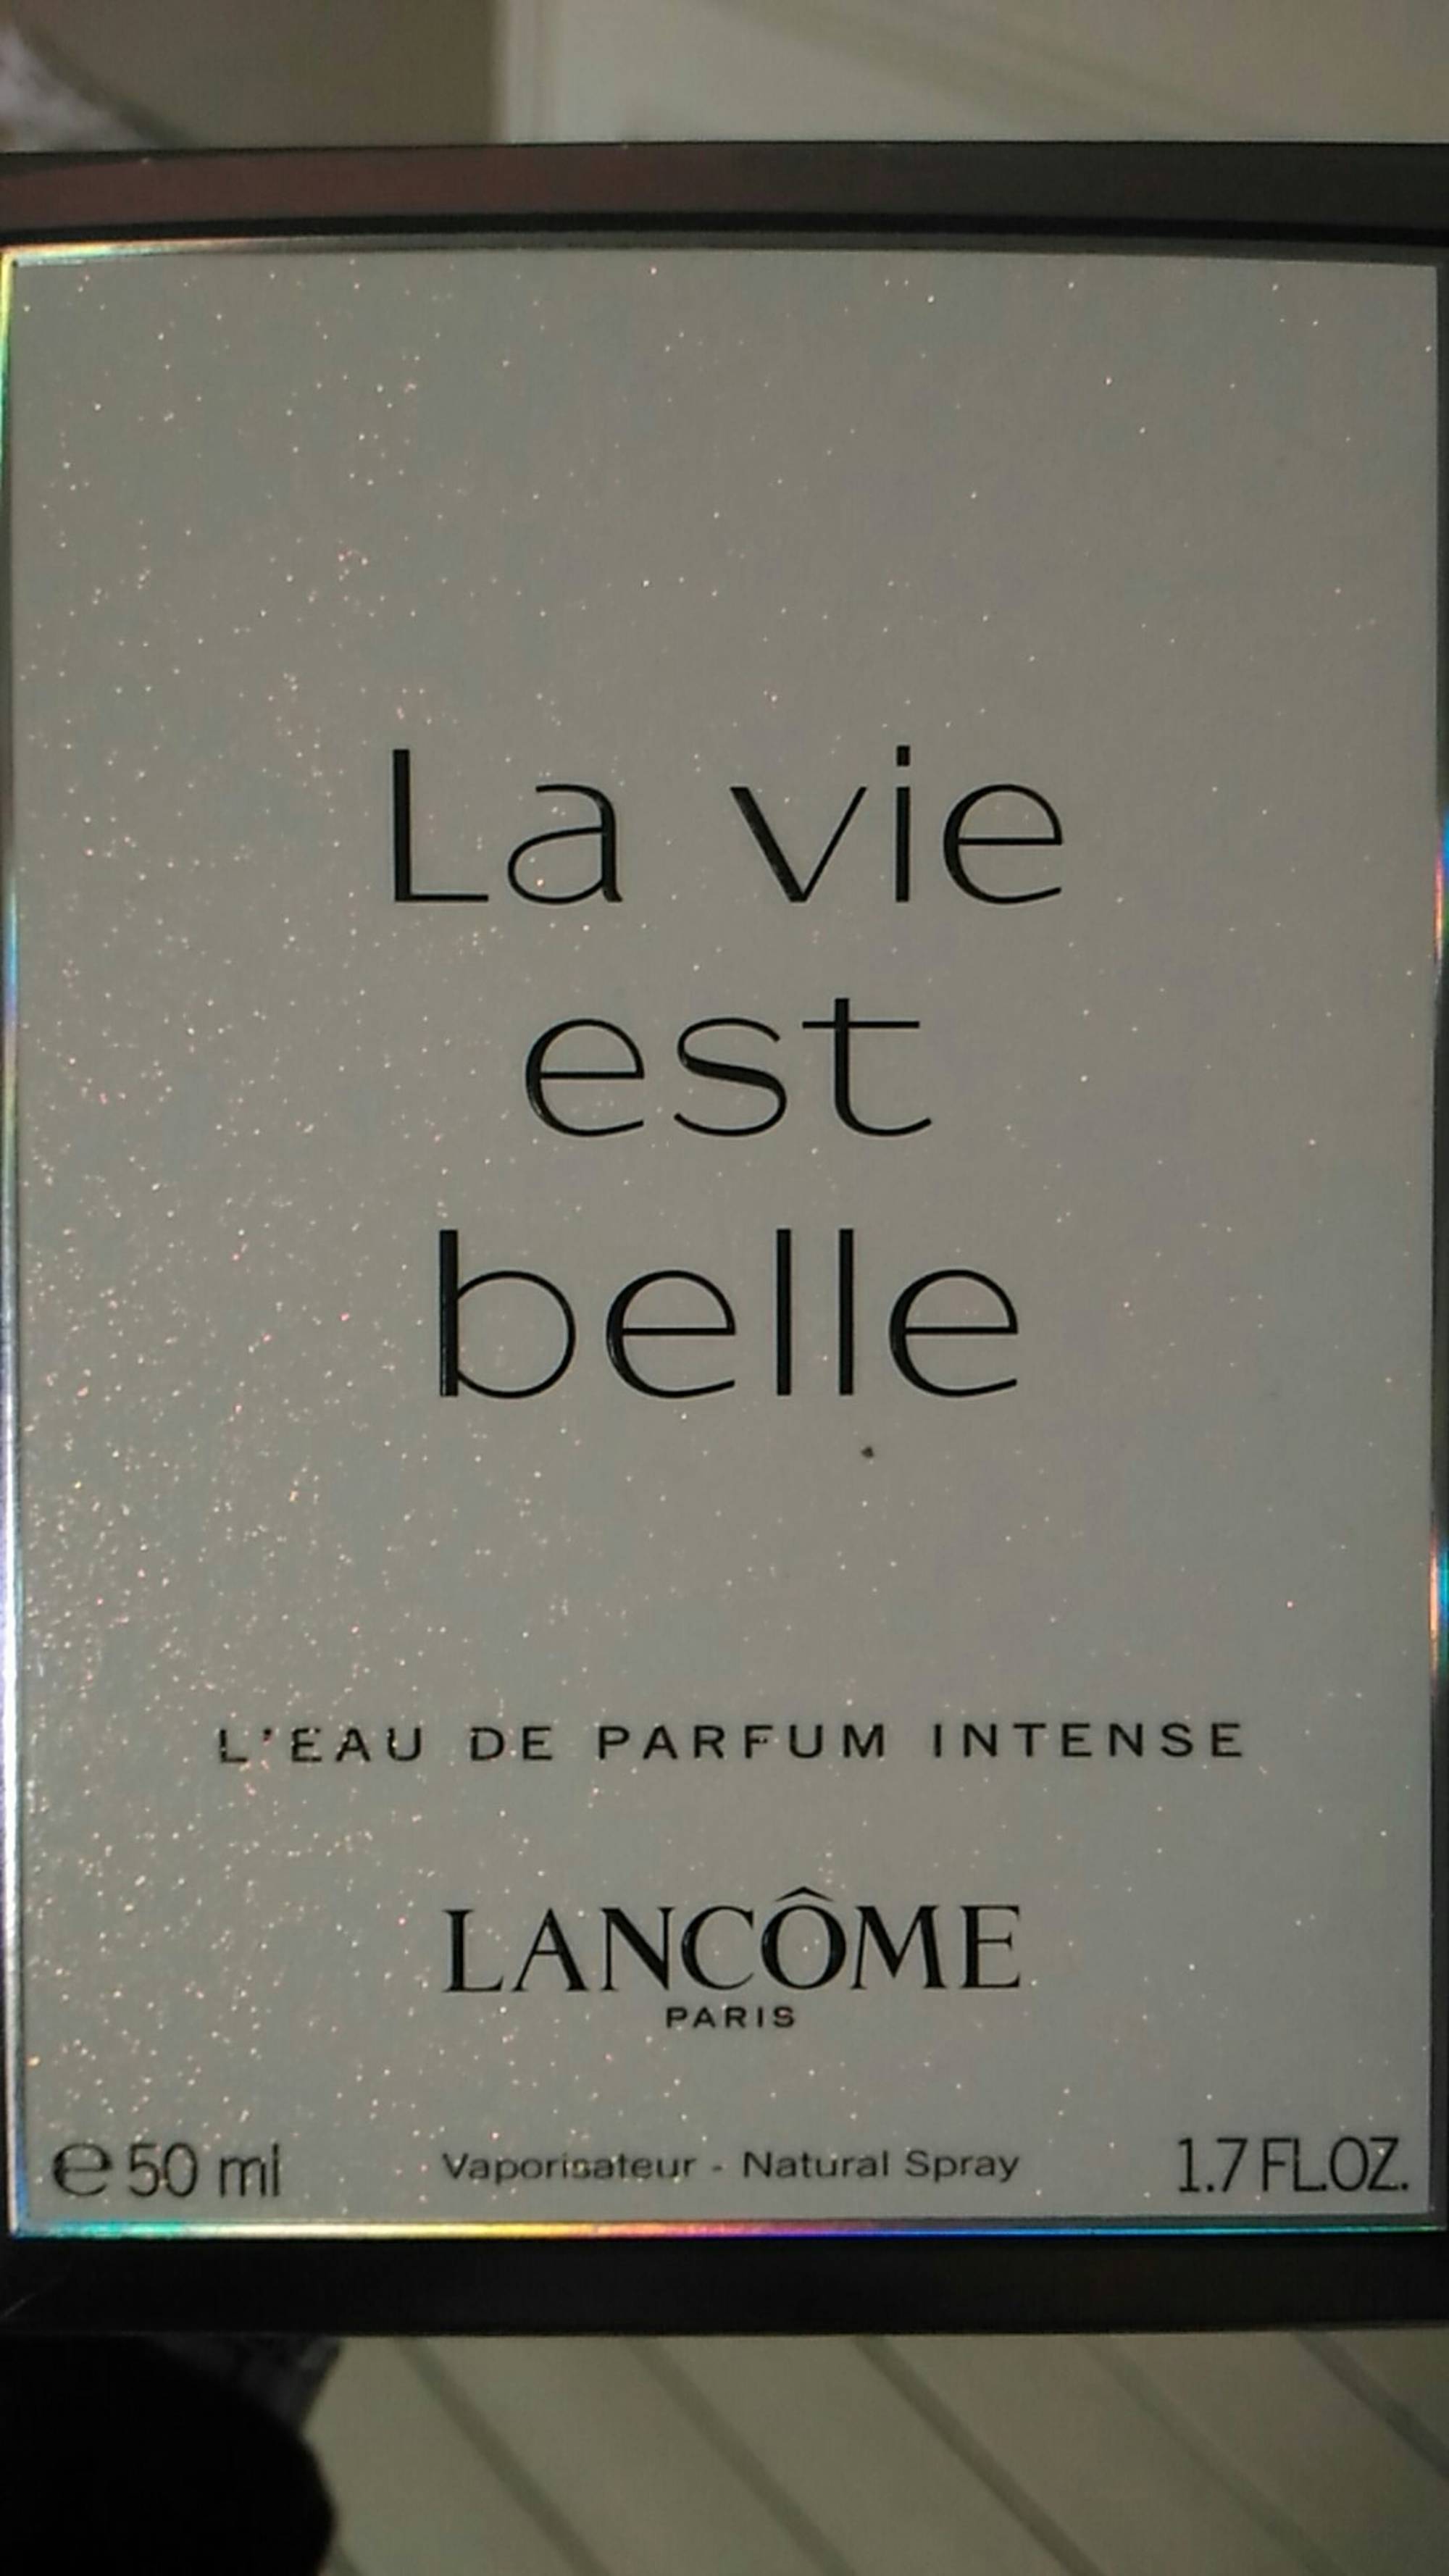 LANCÔME - La vie est belle - Eau de parfum intense